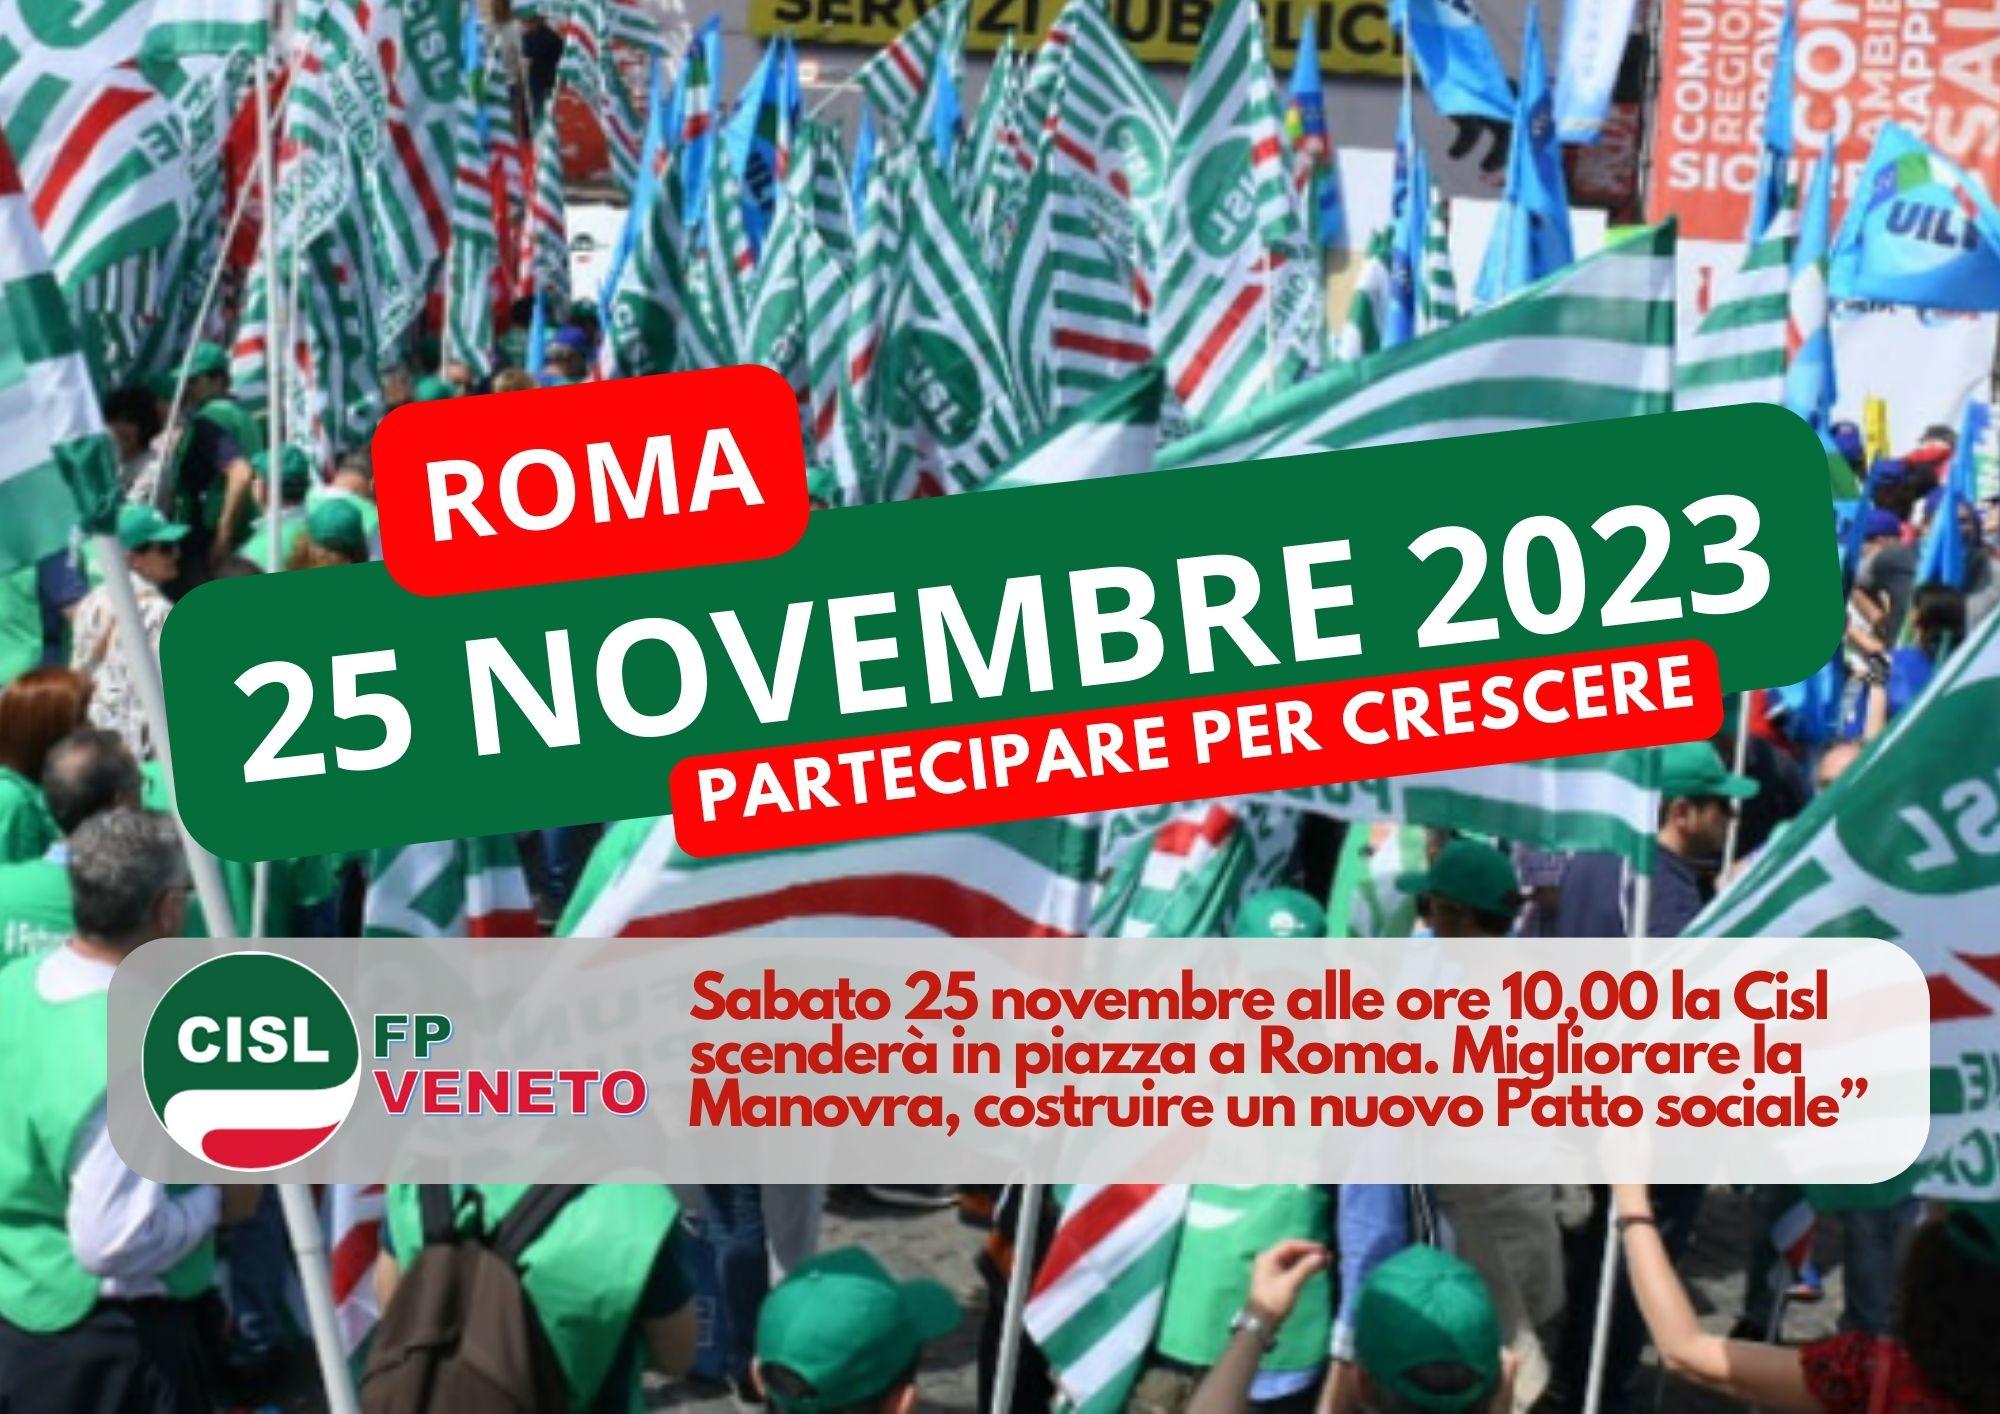 CISL FP Veneto. Manovra finanziaria: Sabato 25 novembre manifestazione nazionale Cisl a Roma